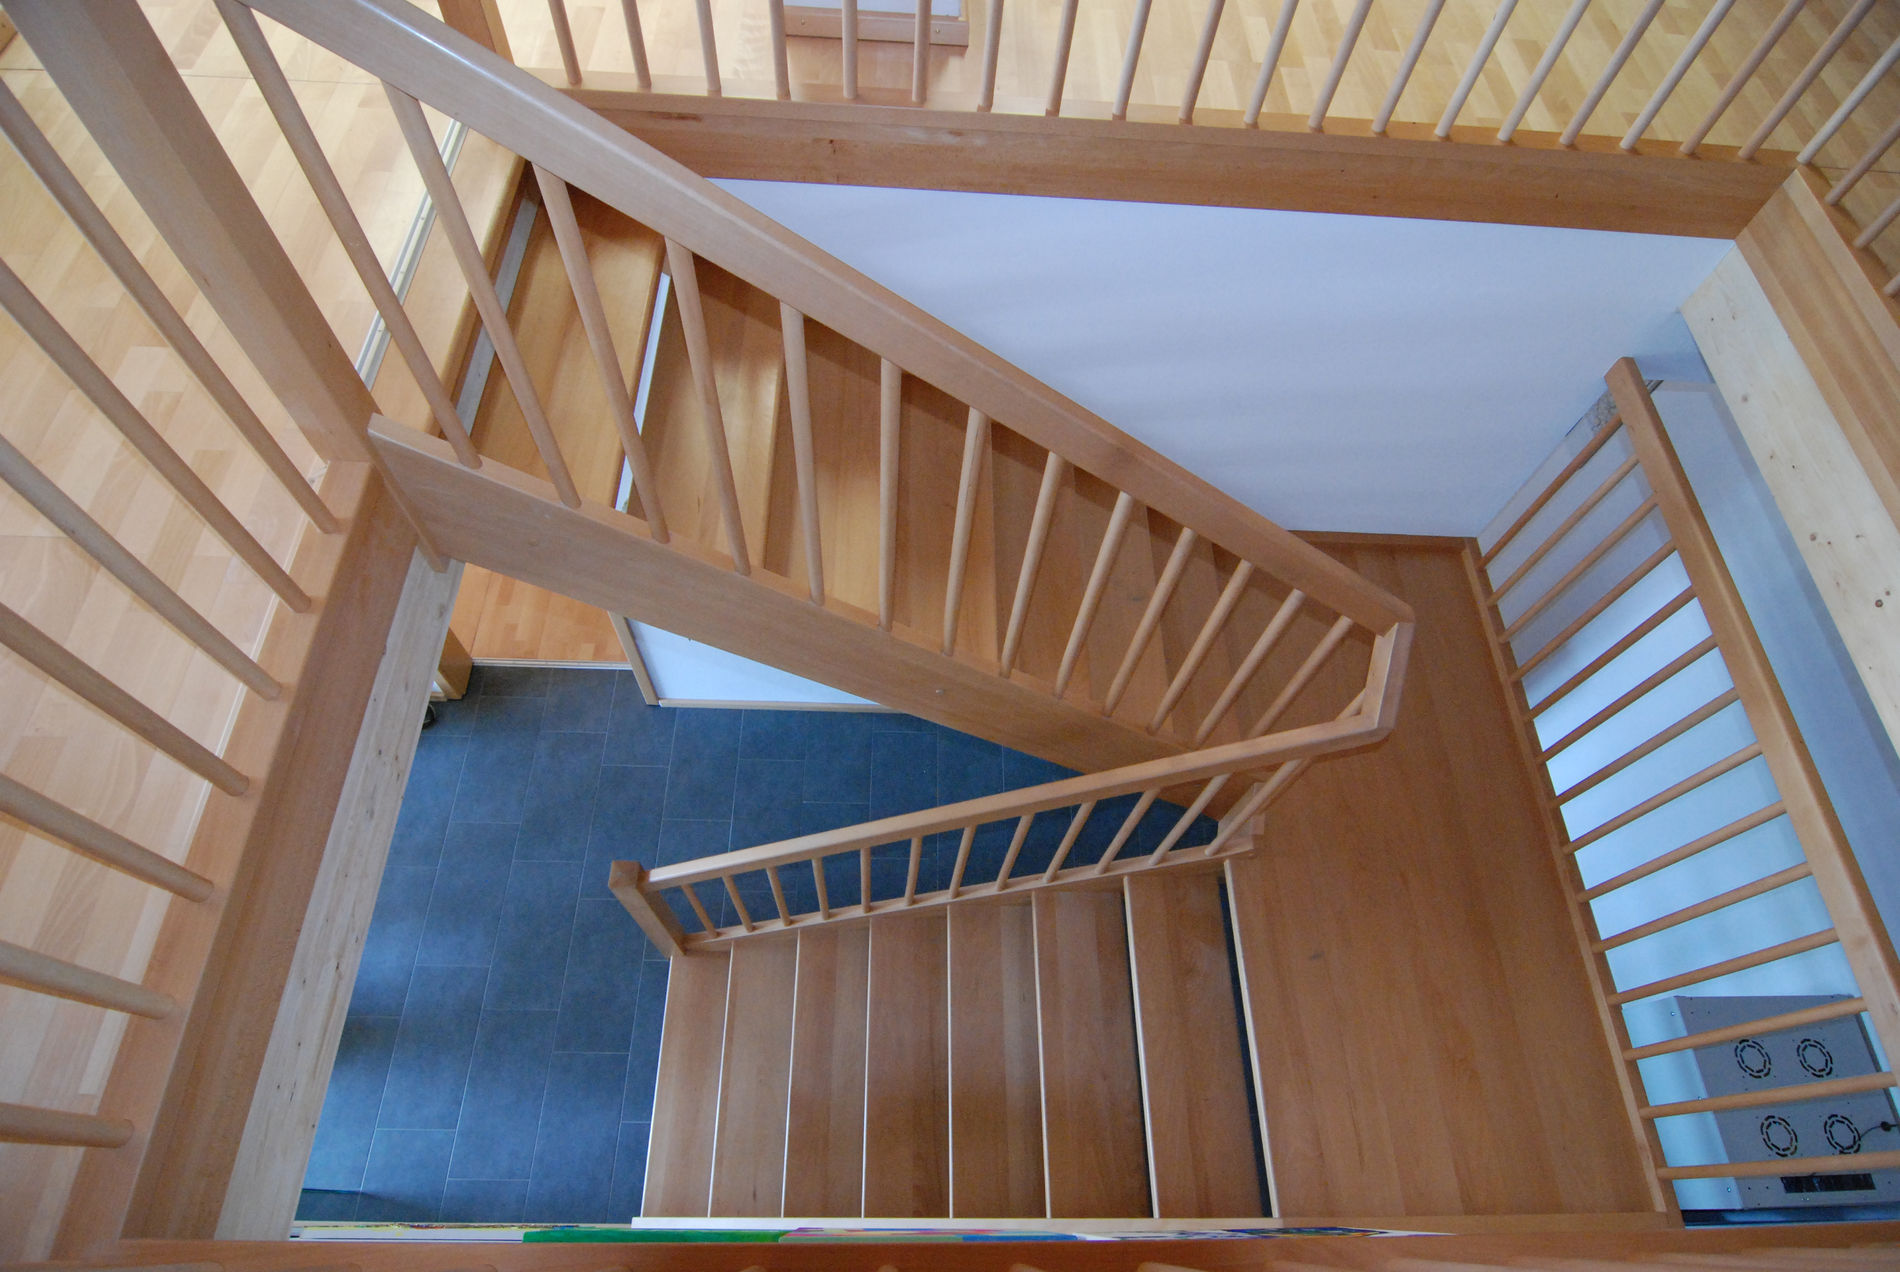 Blick von oben auf eine hölzerne Wendeltreppe mit offenen Stufen und einem Geländer aus vertikalen Holzstäben, die eine moderne Innenarchitektur widerspiegelt.